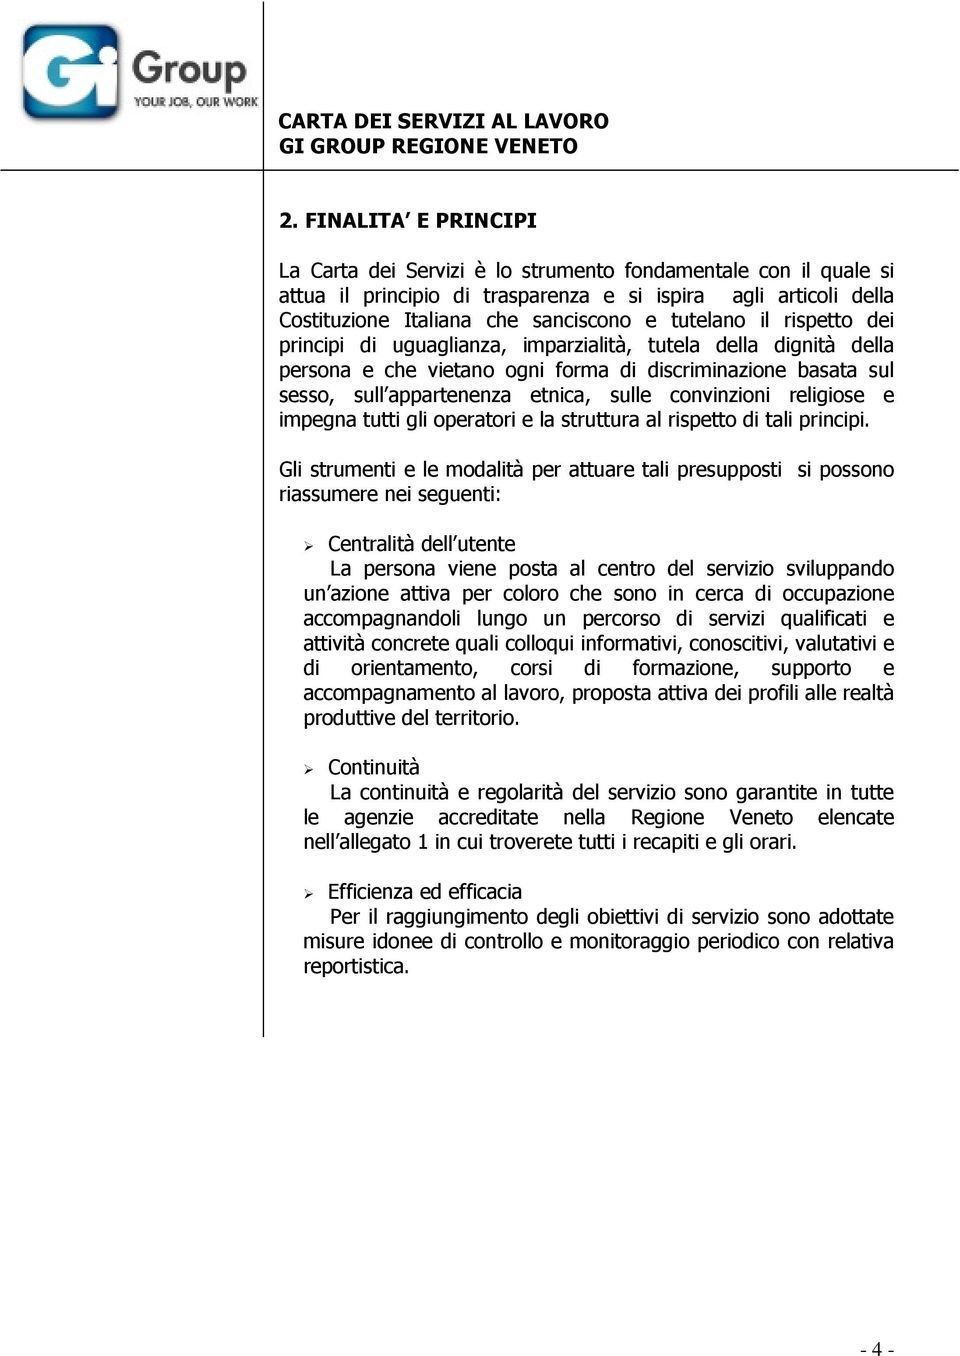 Carta Dei Servizi Al Lavoro Gi Group Regione Veneto Pdf